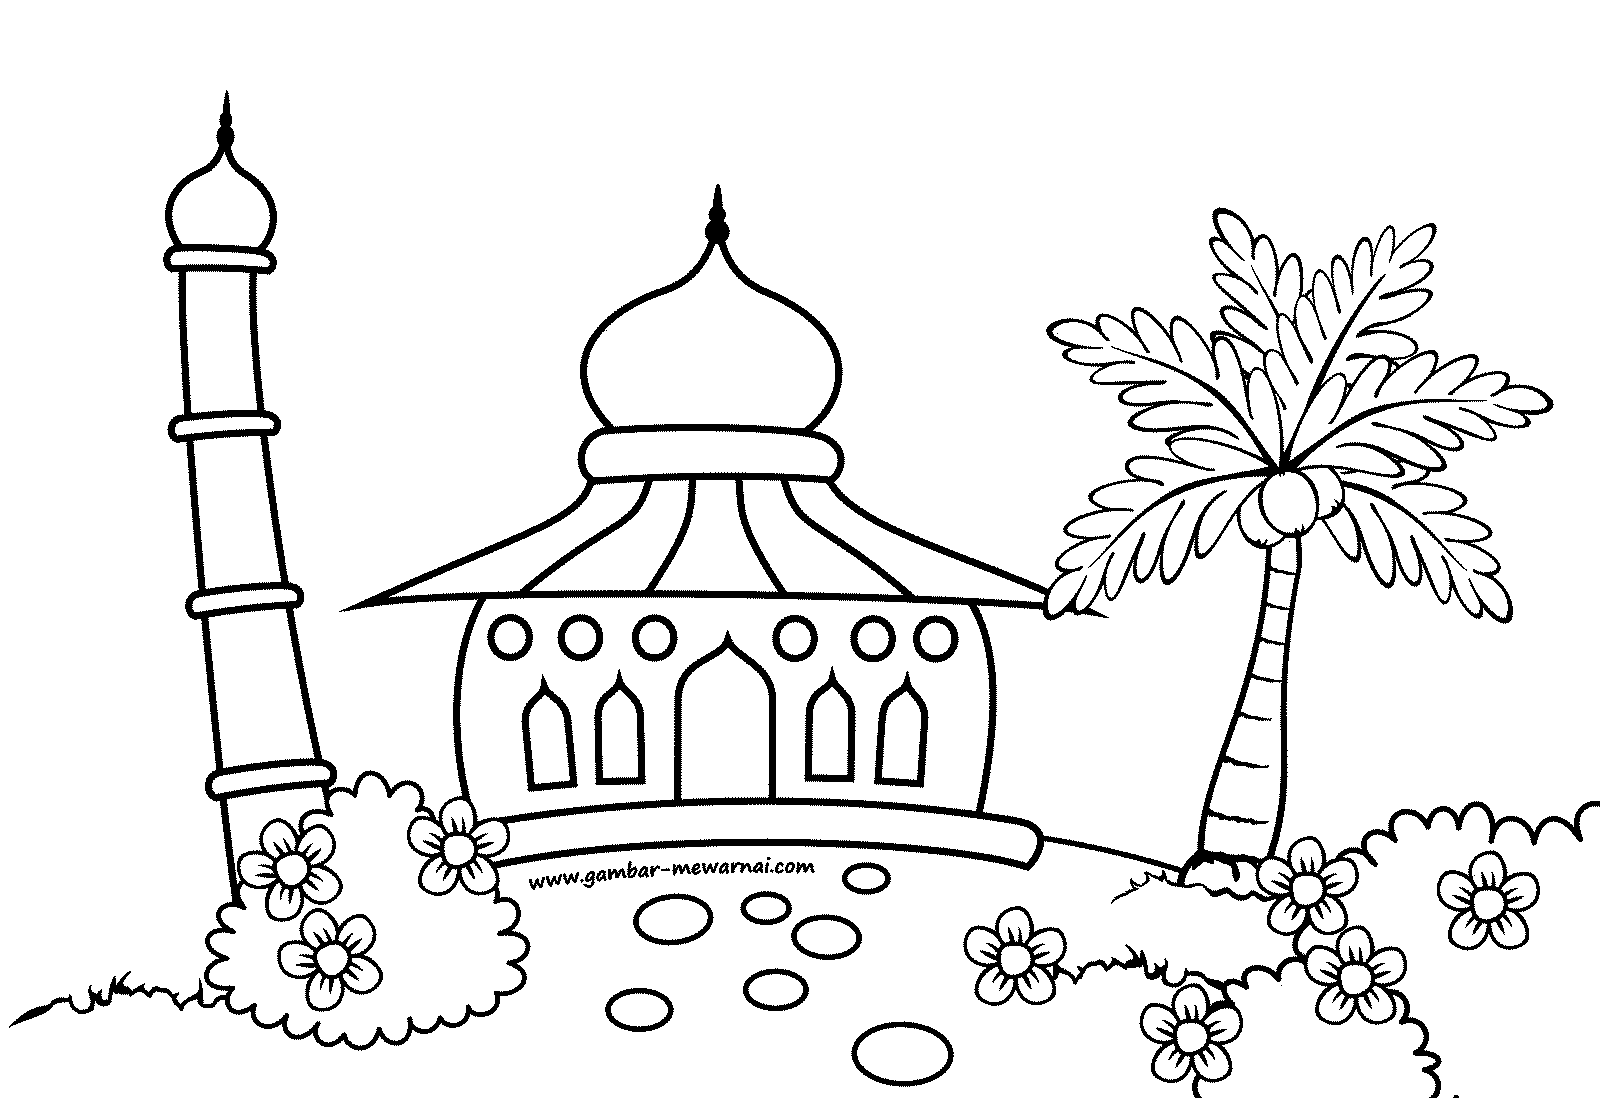 Download Sketsa Gambar Masjid Yang Mudah Ditiru Sketsabaru